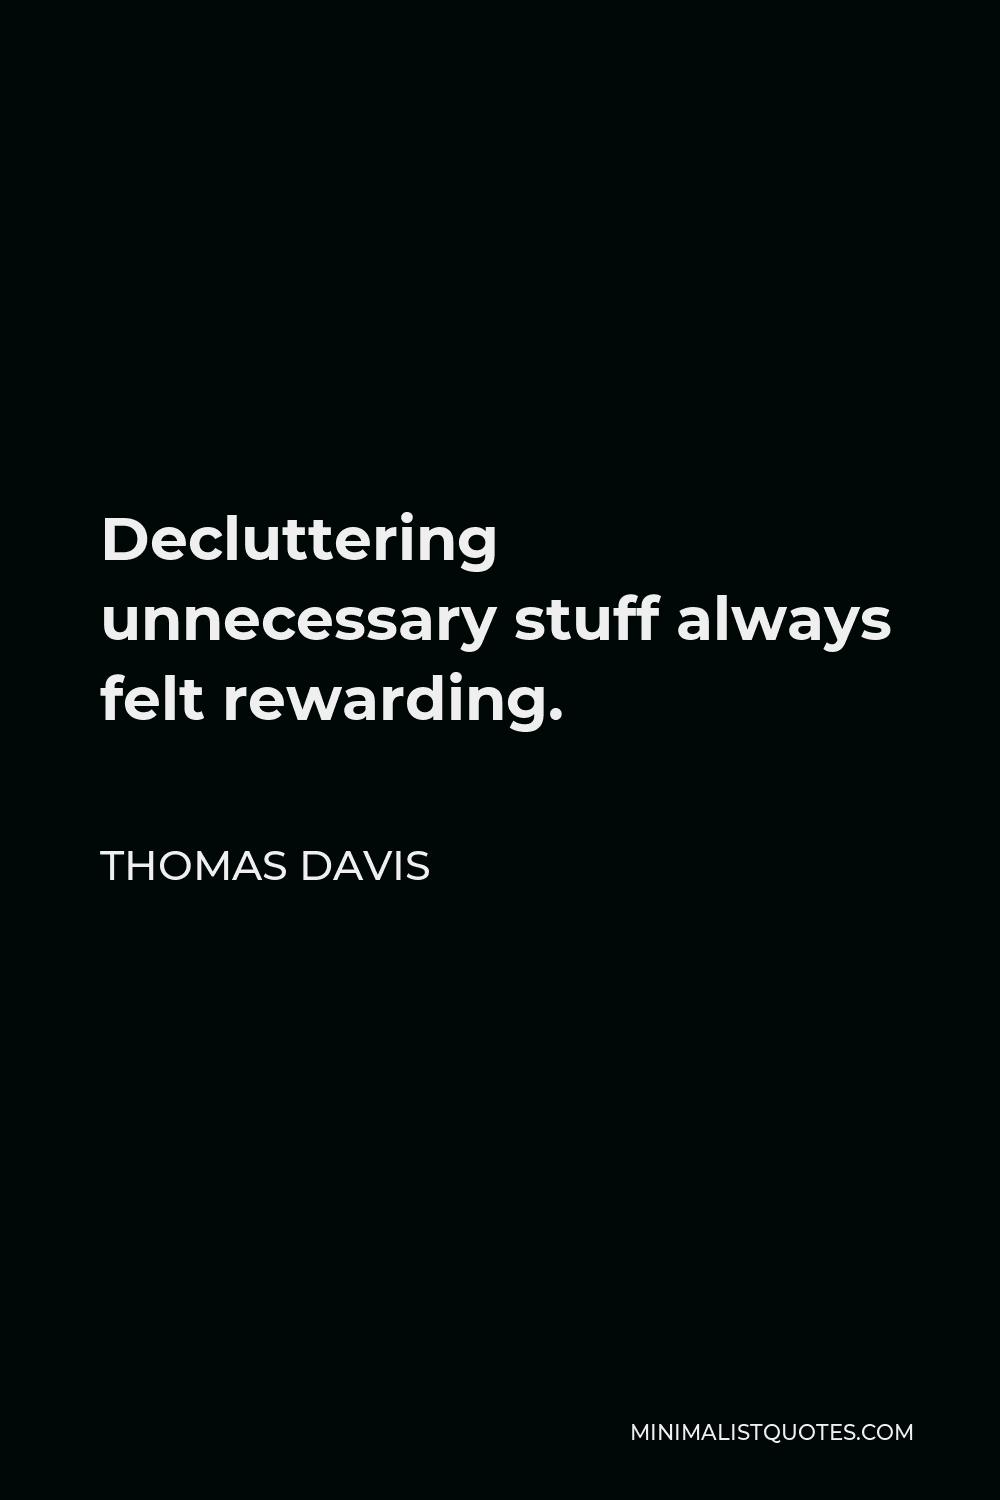 Thomas Davis Quote - Decluttering unnecessary stuff always felt rewarding.